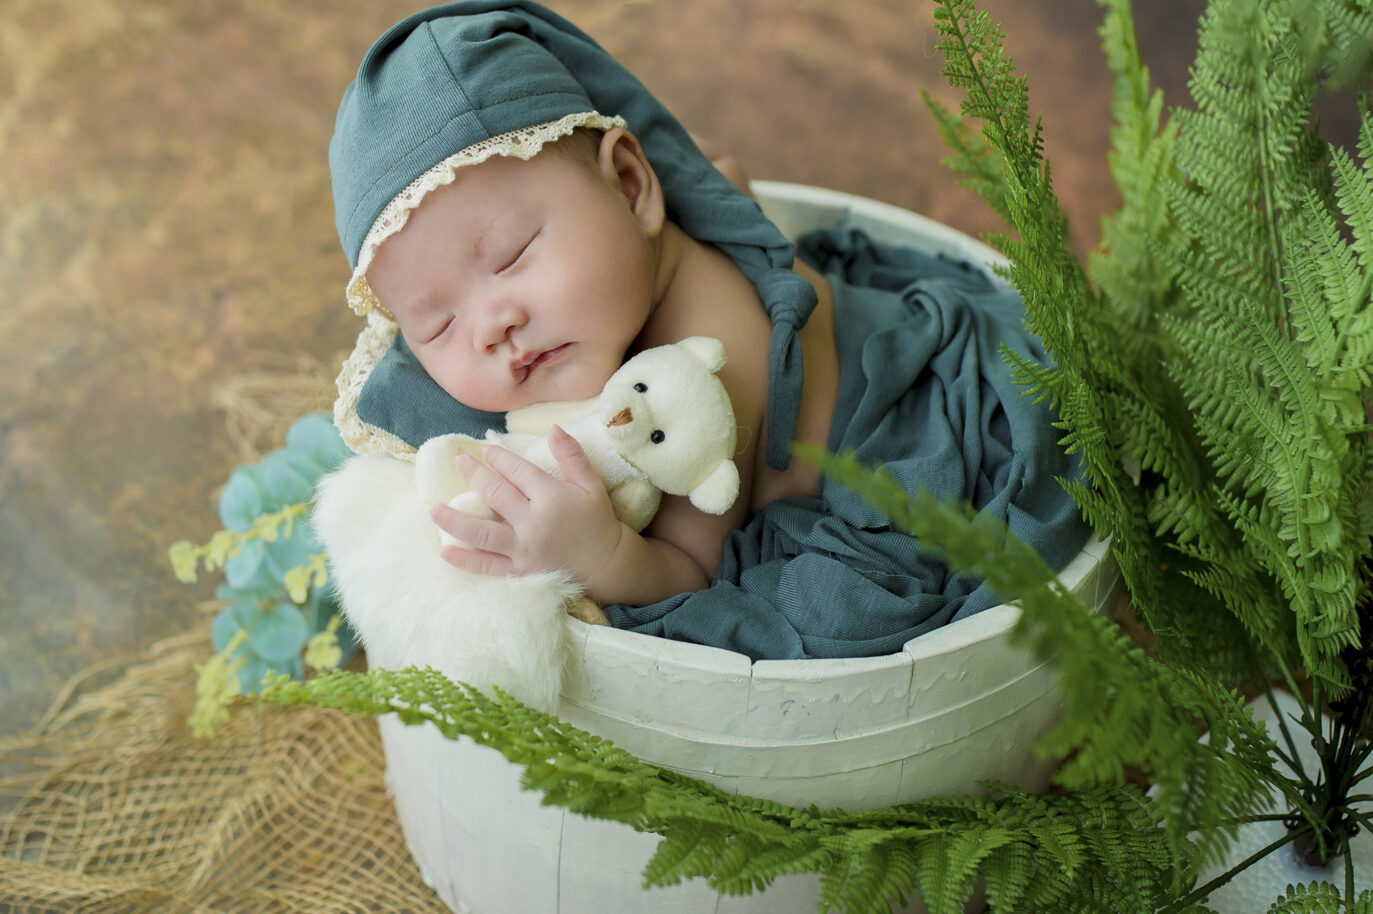 Chụp hình sơ sinh - Newborn - Nari baby Studio - Hotline: 0911686611